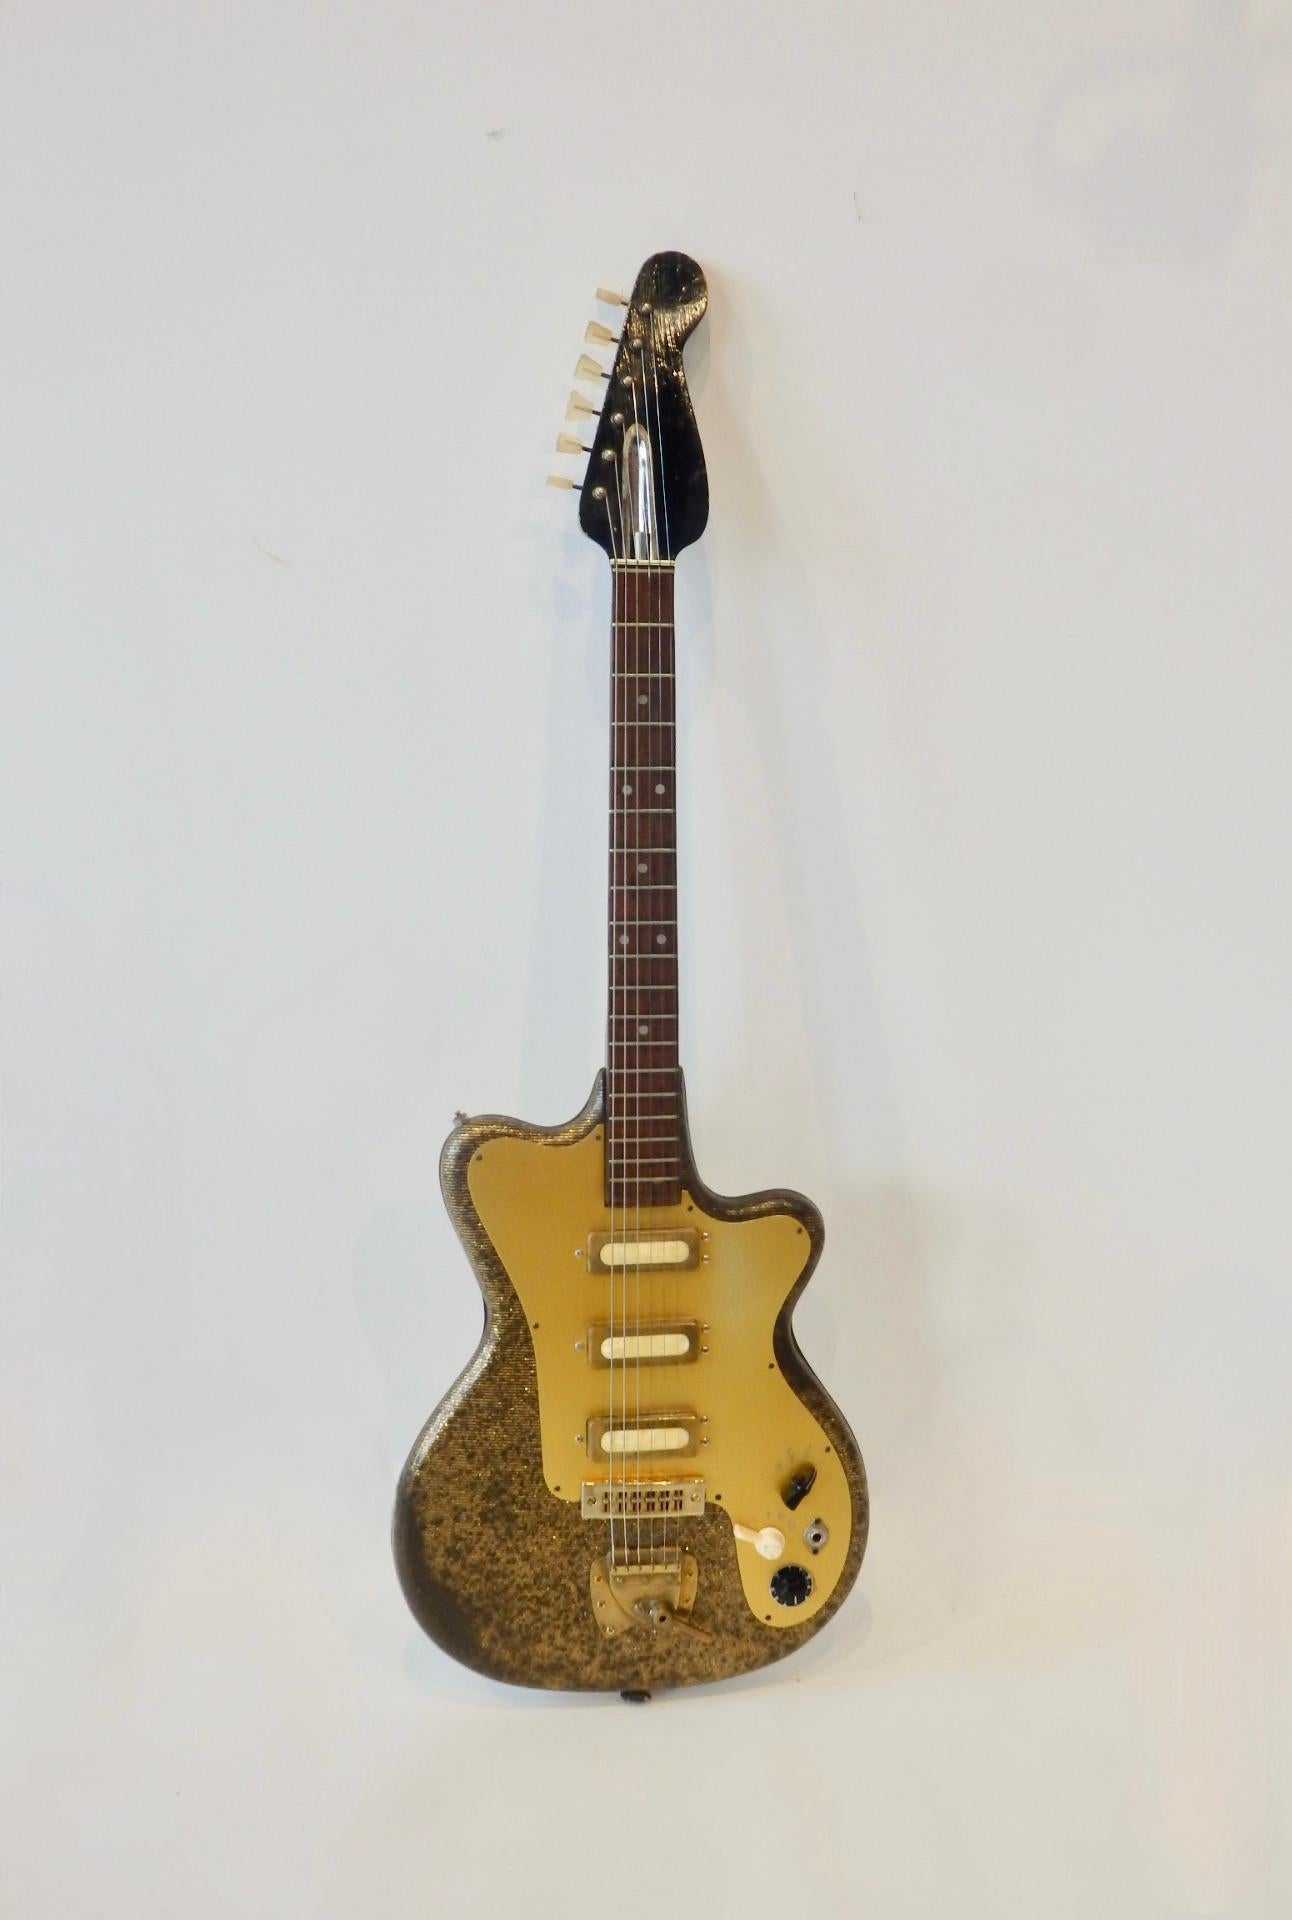 Ancienne et rare guitare électrique allemande à corps solide. Fabriqué par les guitares Fasan . Le corps est enveloppé d'une feuille de métal doré  avec couverture des détails de la ligne noire. Une guitare ancienne intéressante qui a été bien aimée